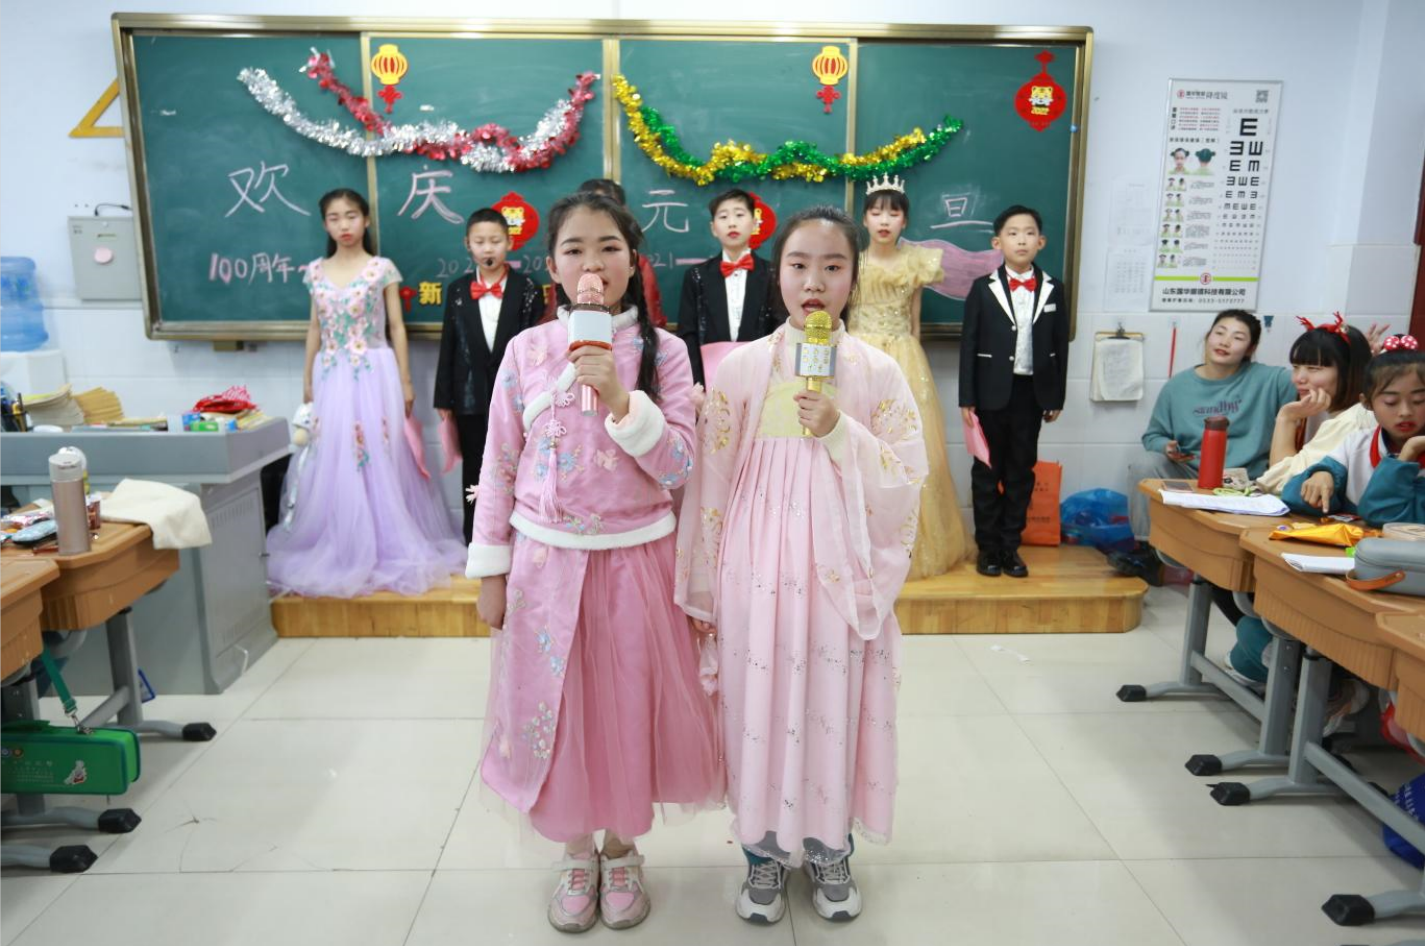 浓浓传统文化节目 绽放古典歌舞魅力——铁路小学举行庆元旦活动